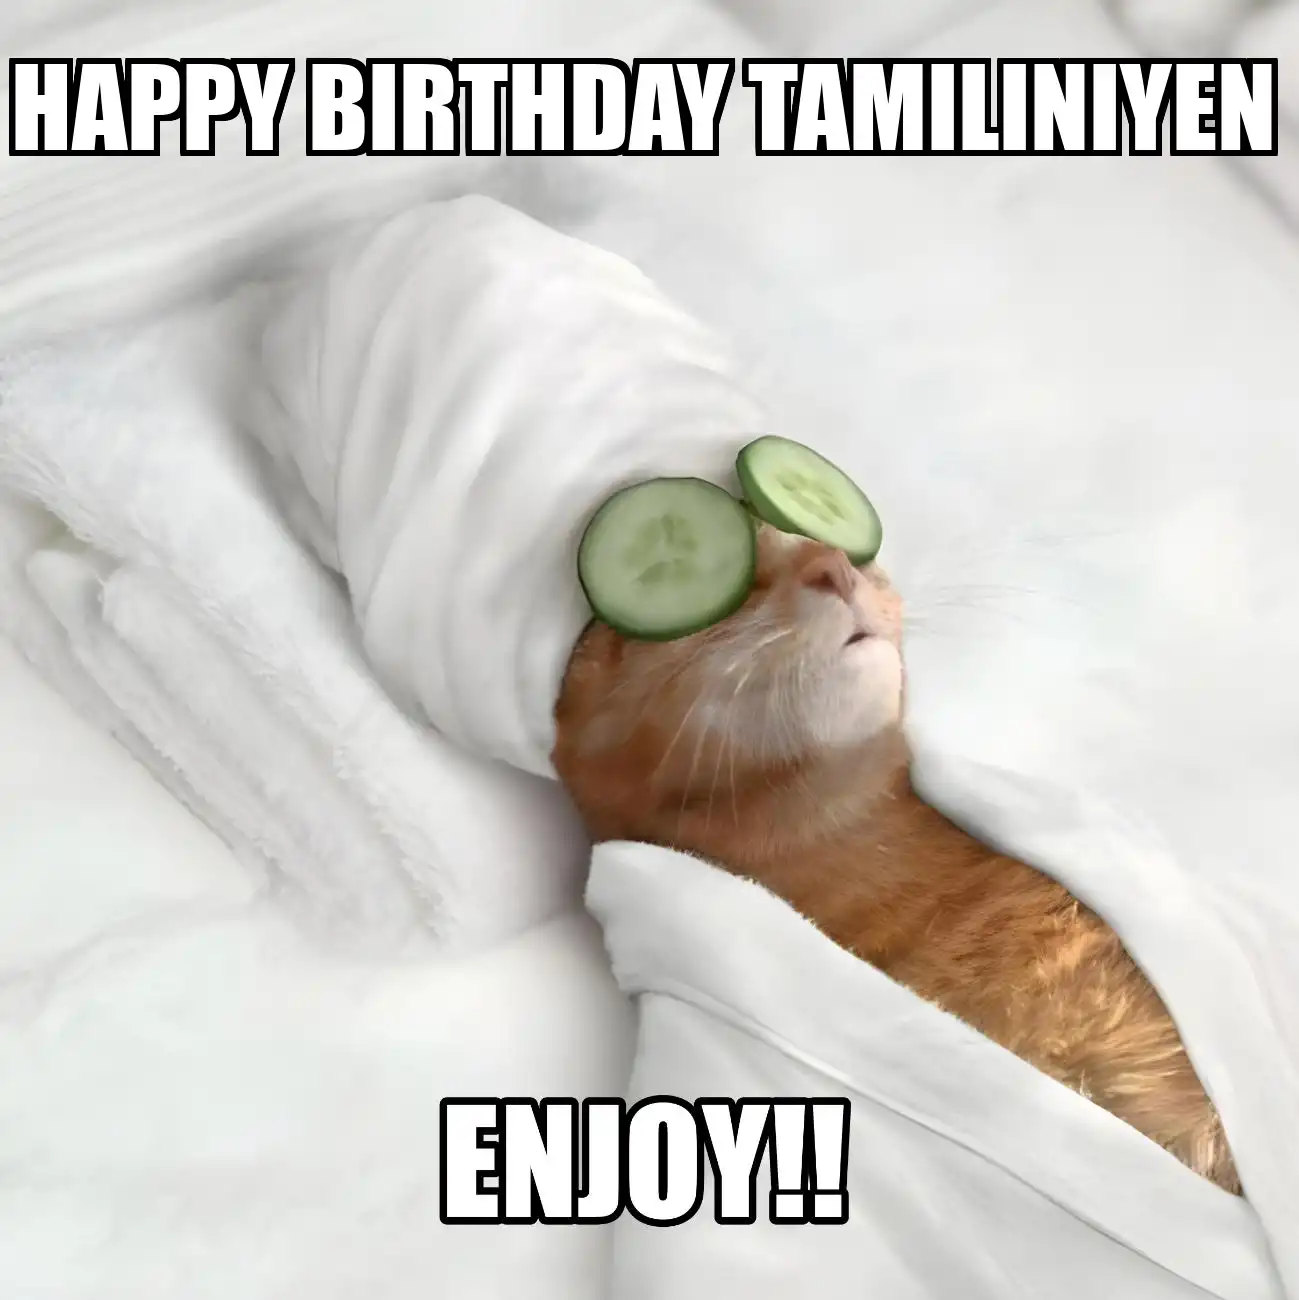 Happy Birthday Tamiliniyen Enjoy Cat Meme